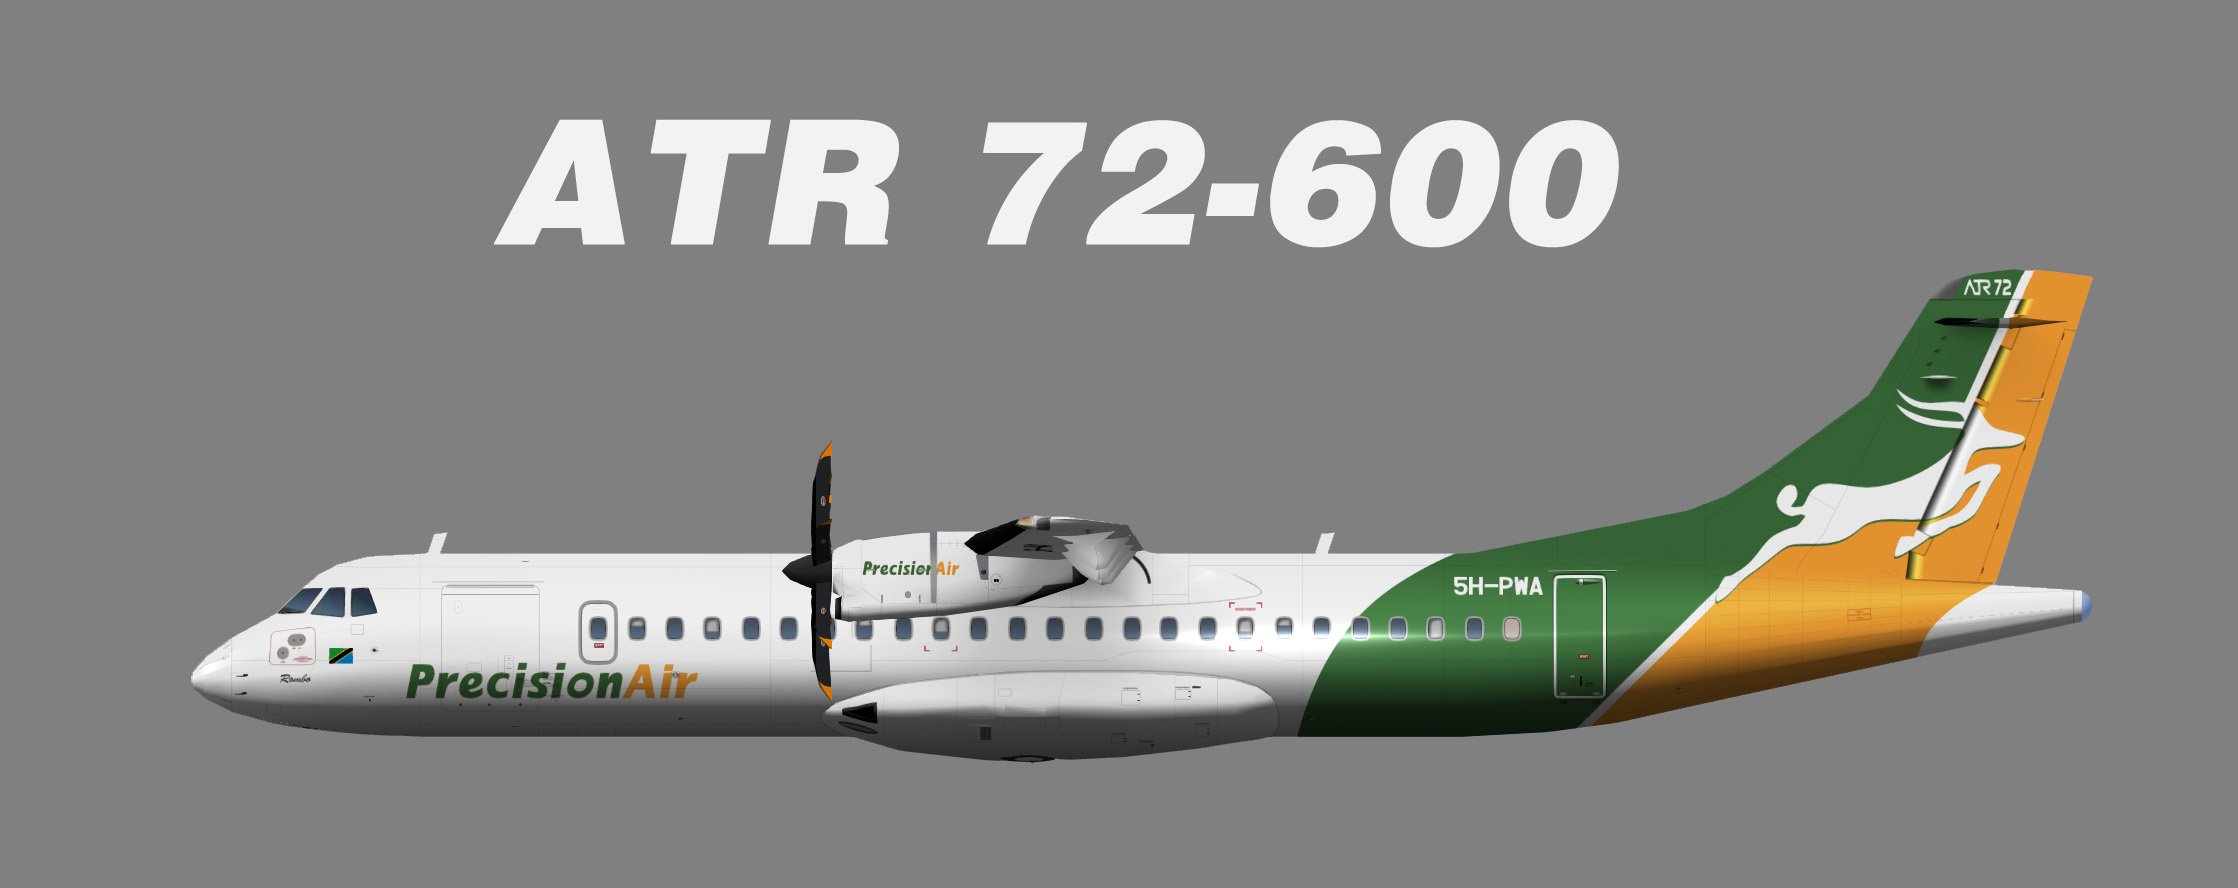 Precision Air ATR 72-500